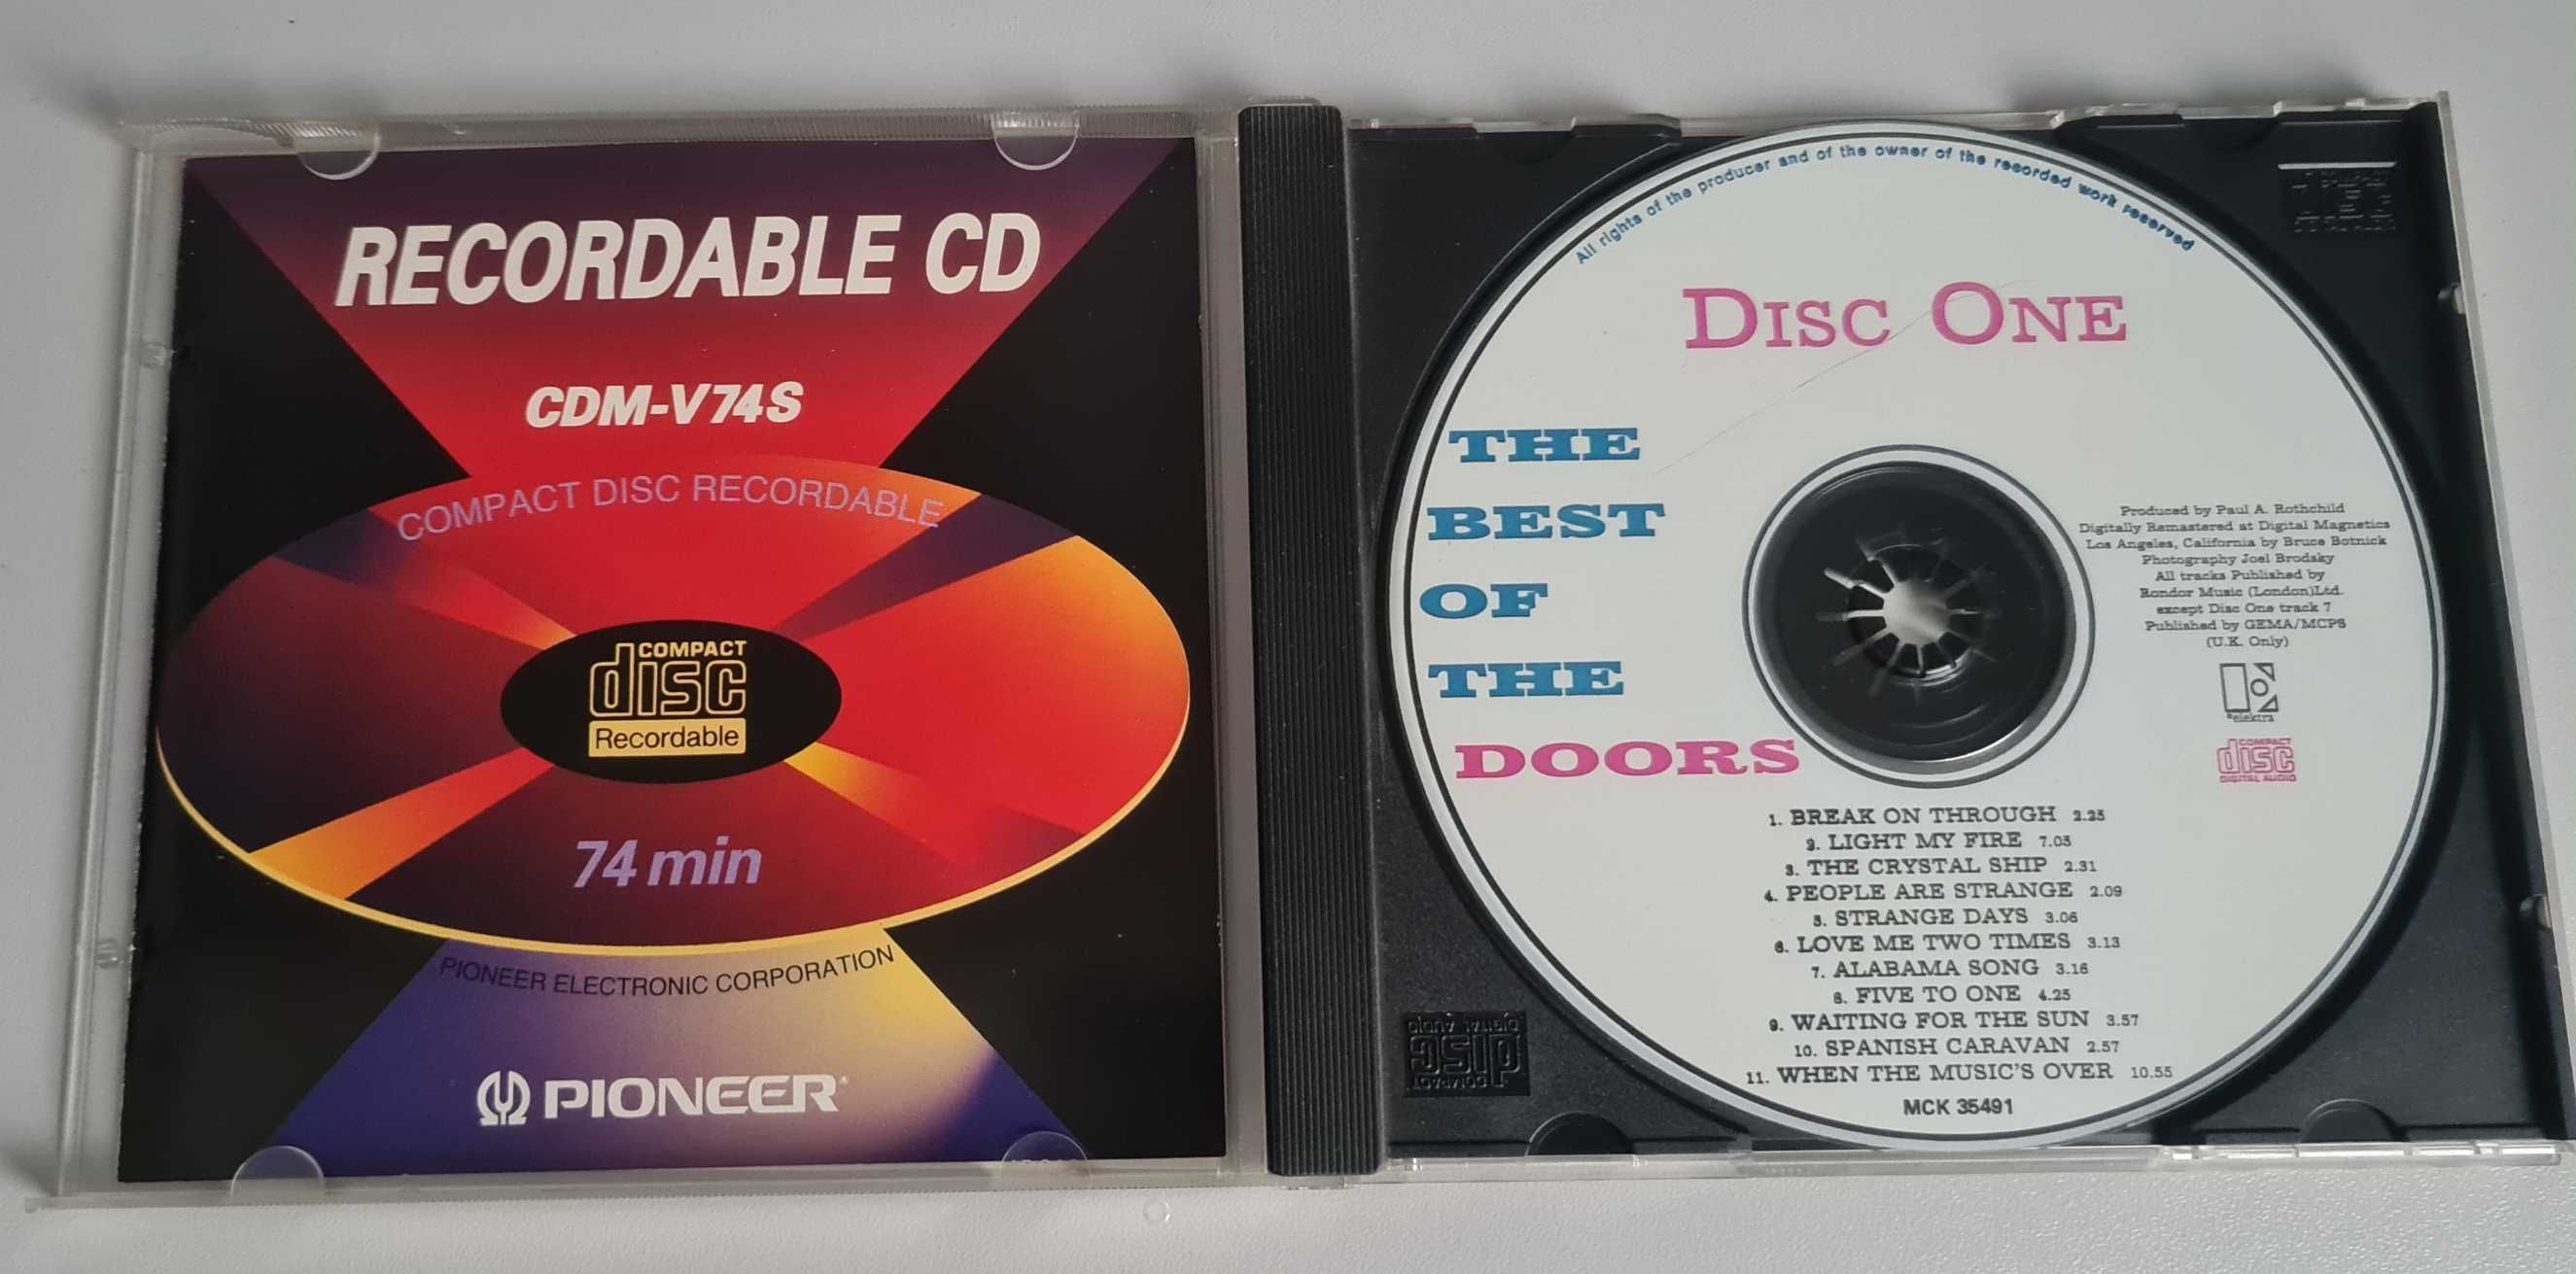 The Doors-The Best Of The Doors (CD)